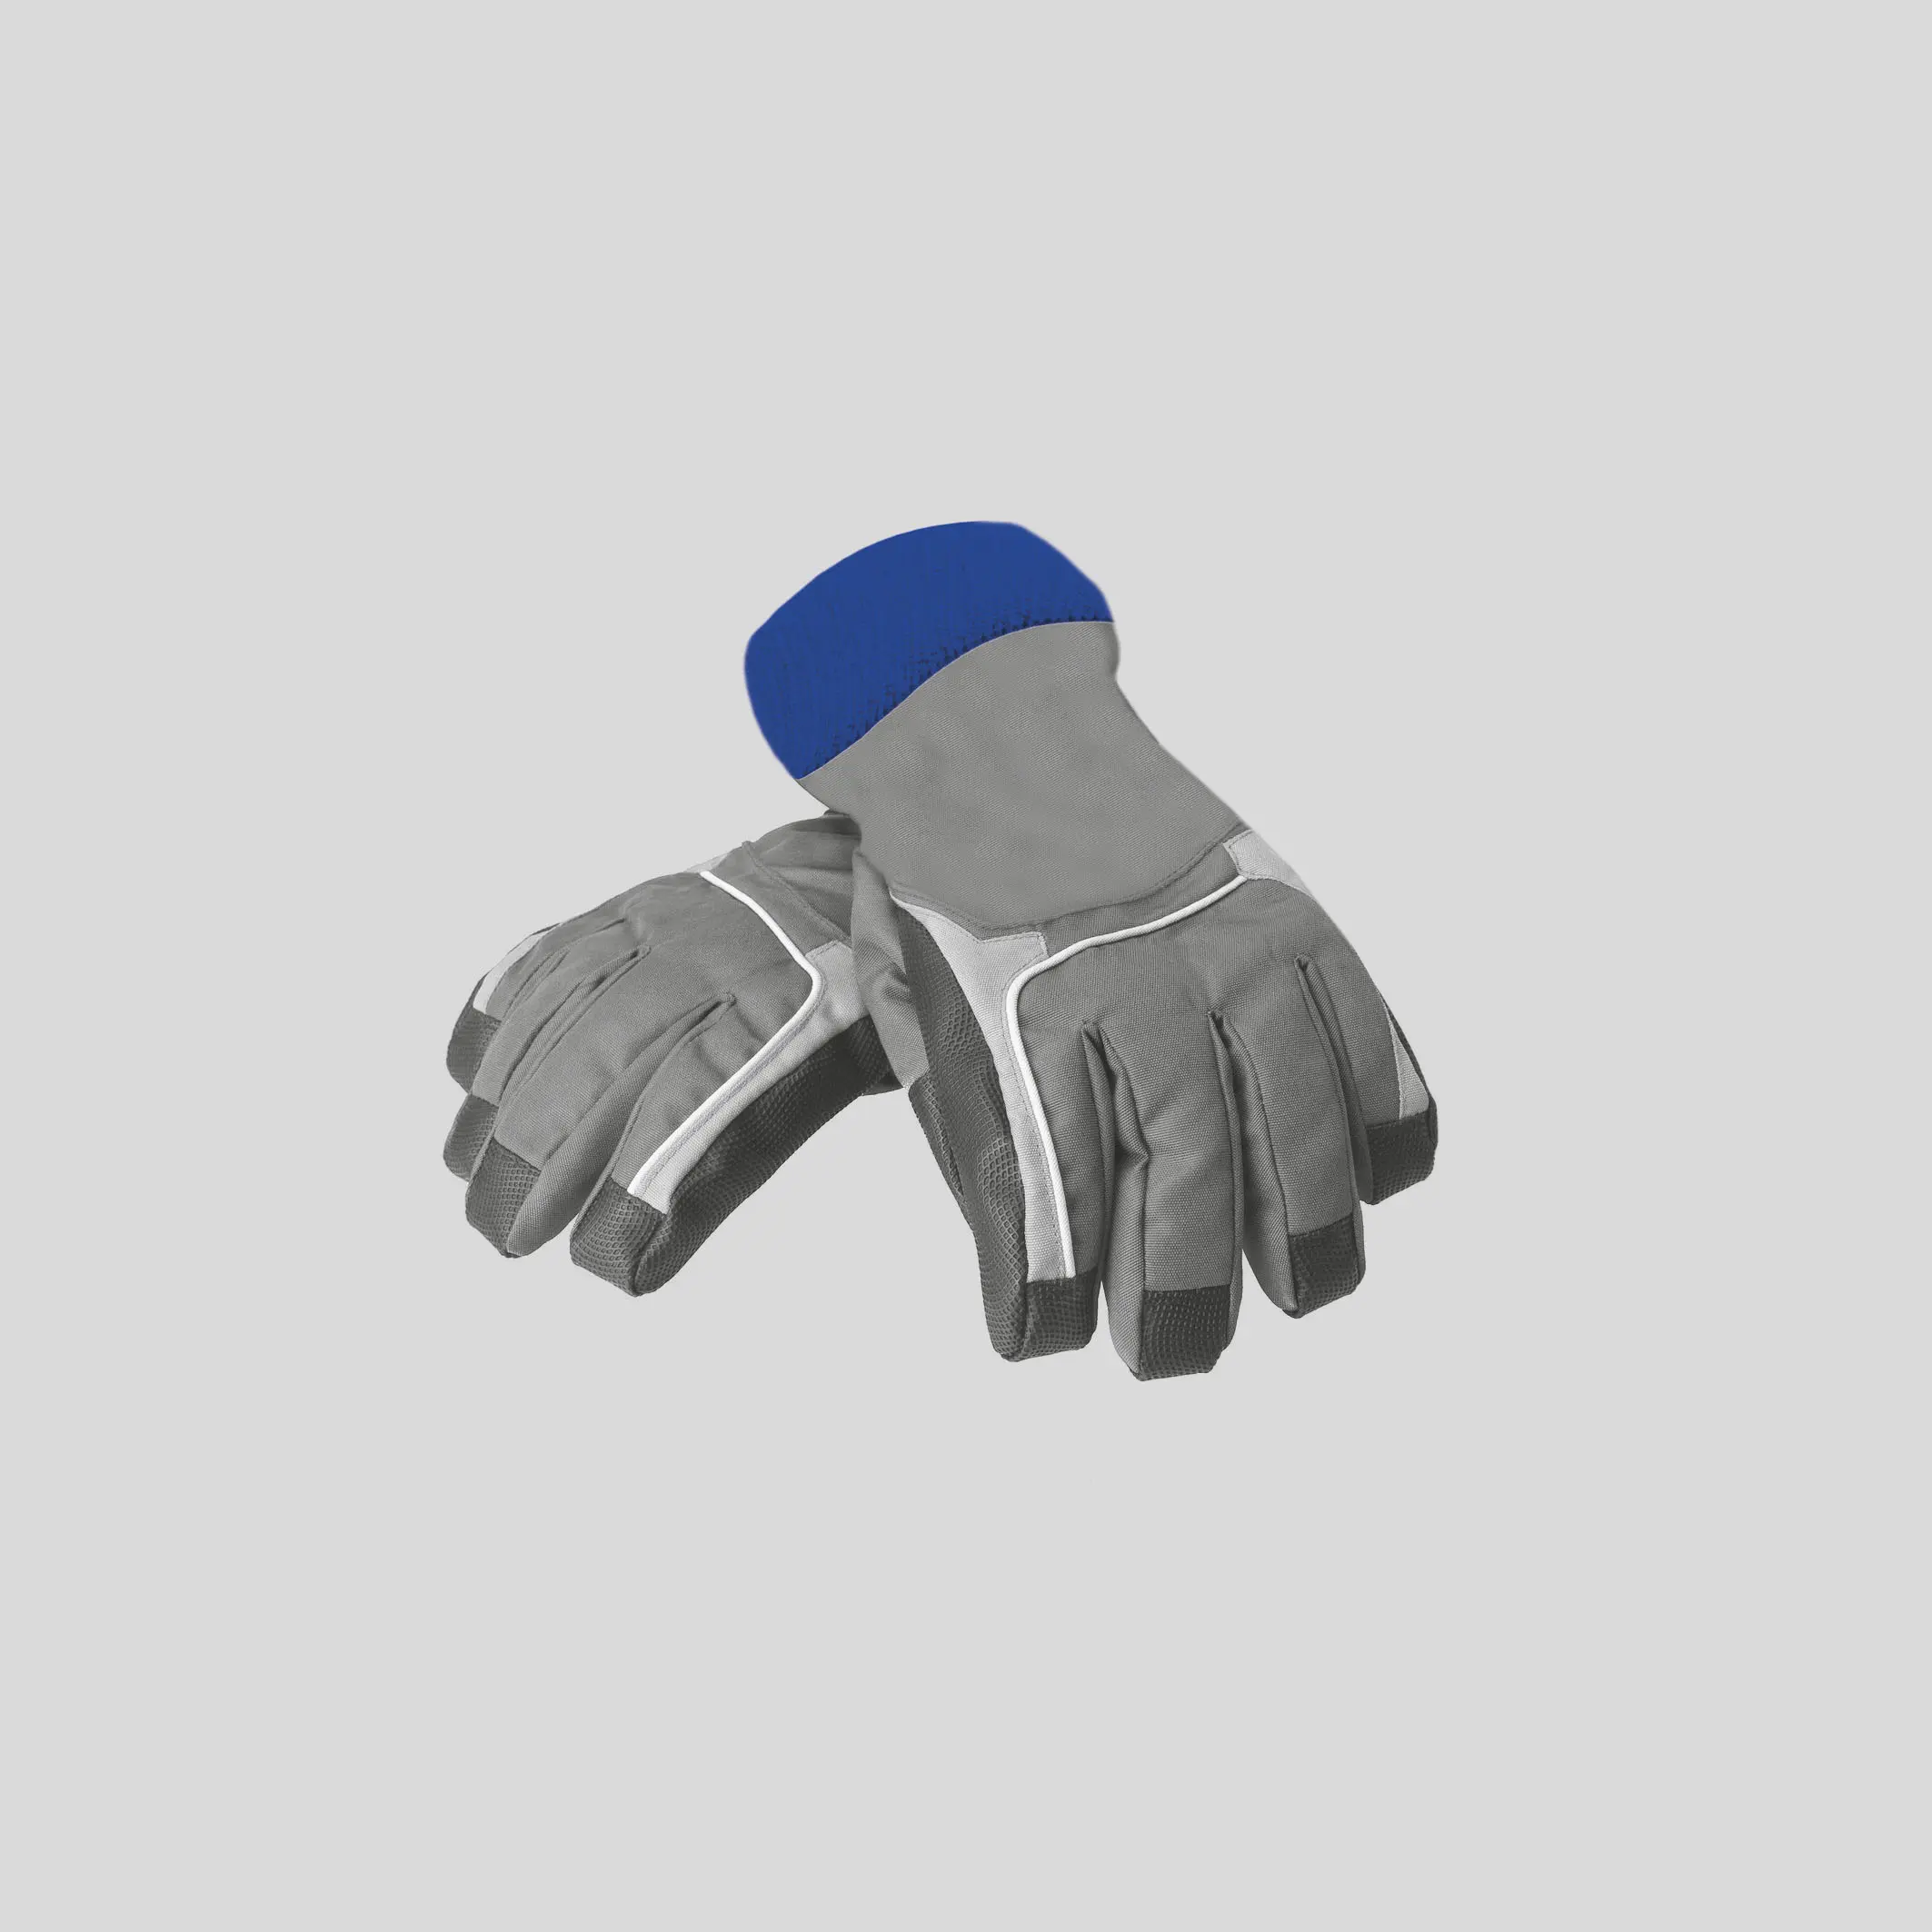 FlexiKlett auf einem Produktfoto von grau-dunkelblauen dicken Handschuhen vor grauem Hintergrund